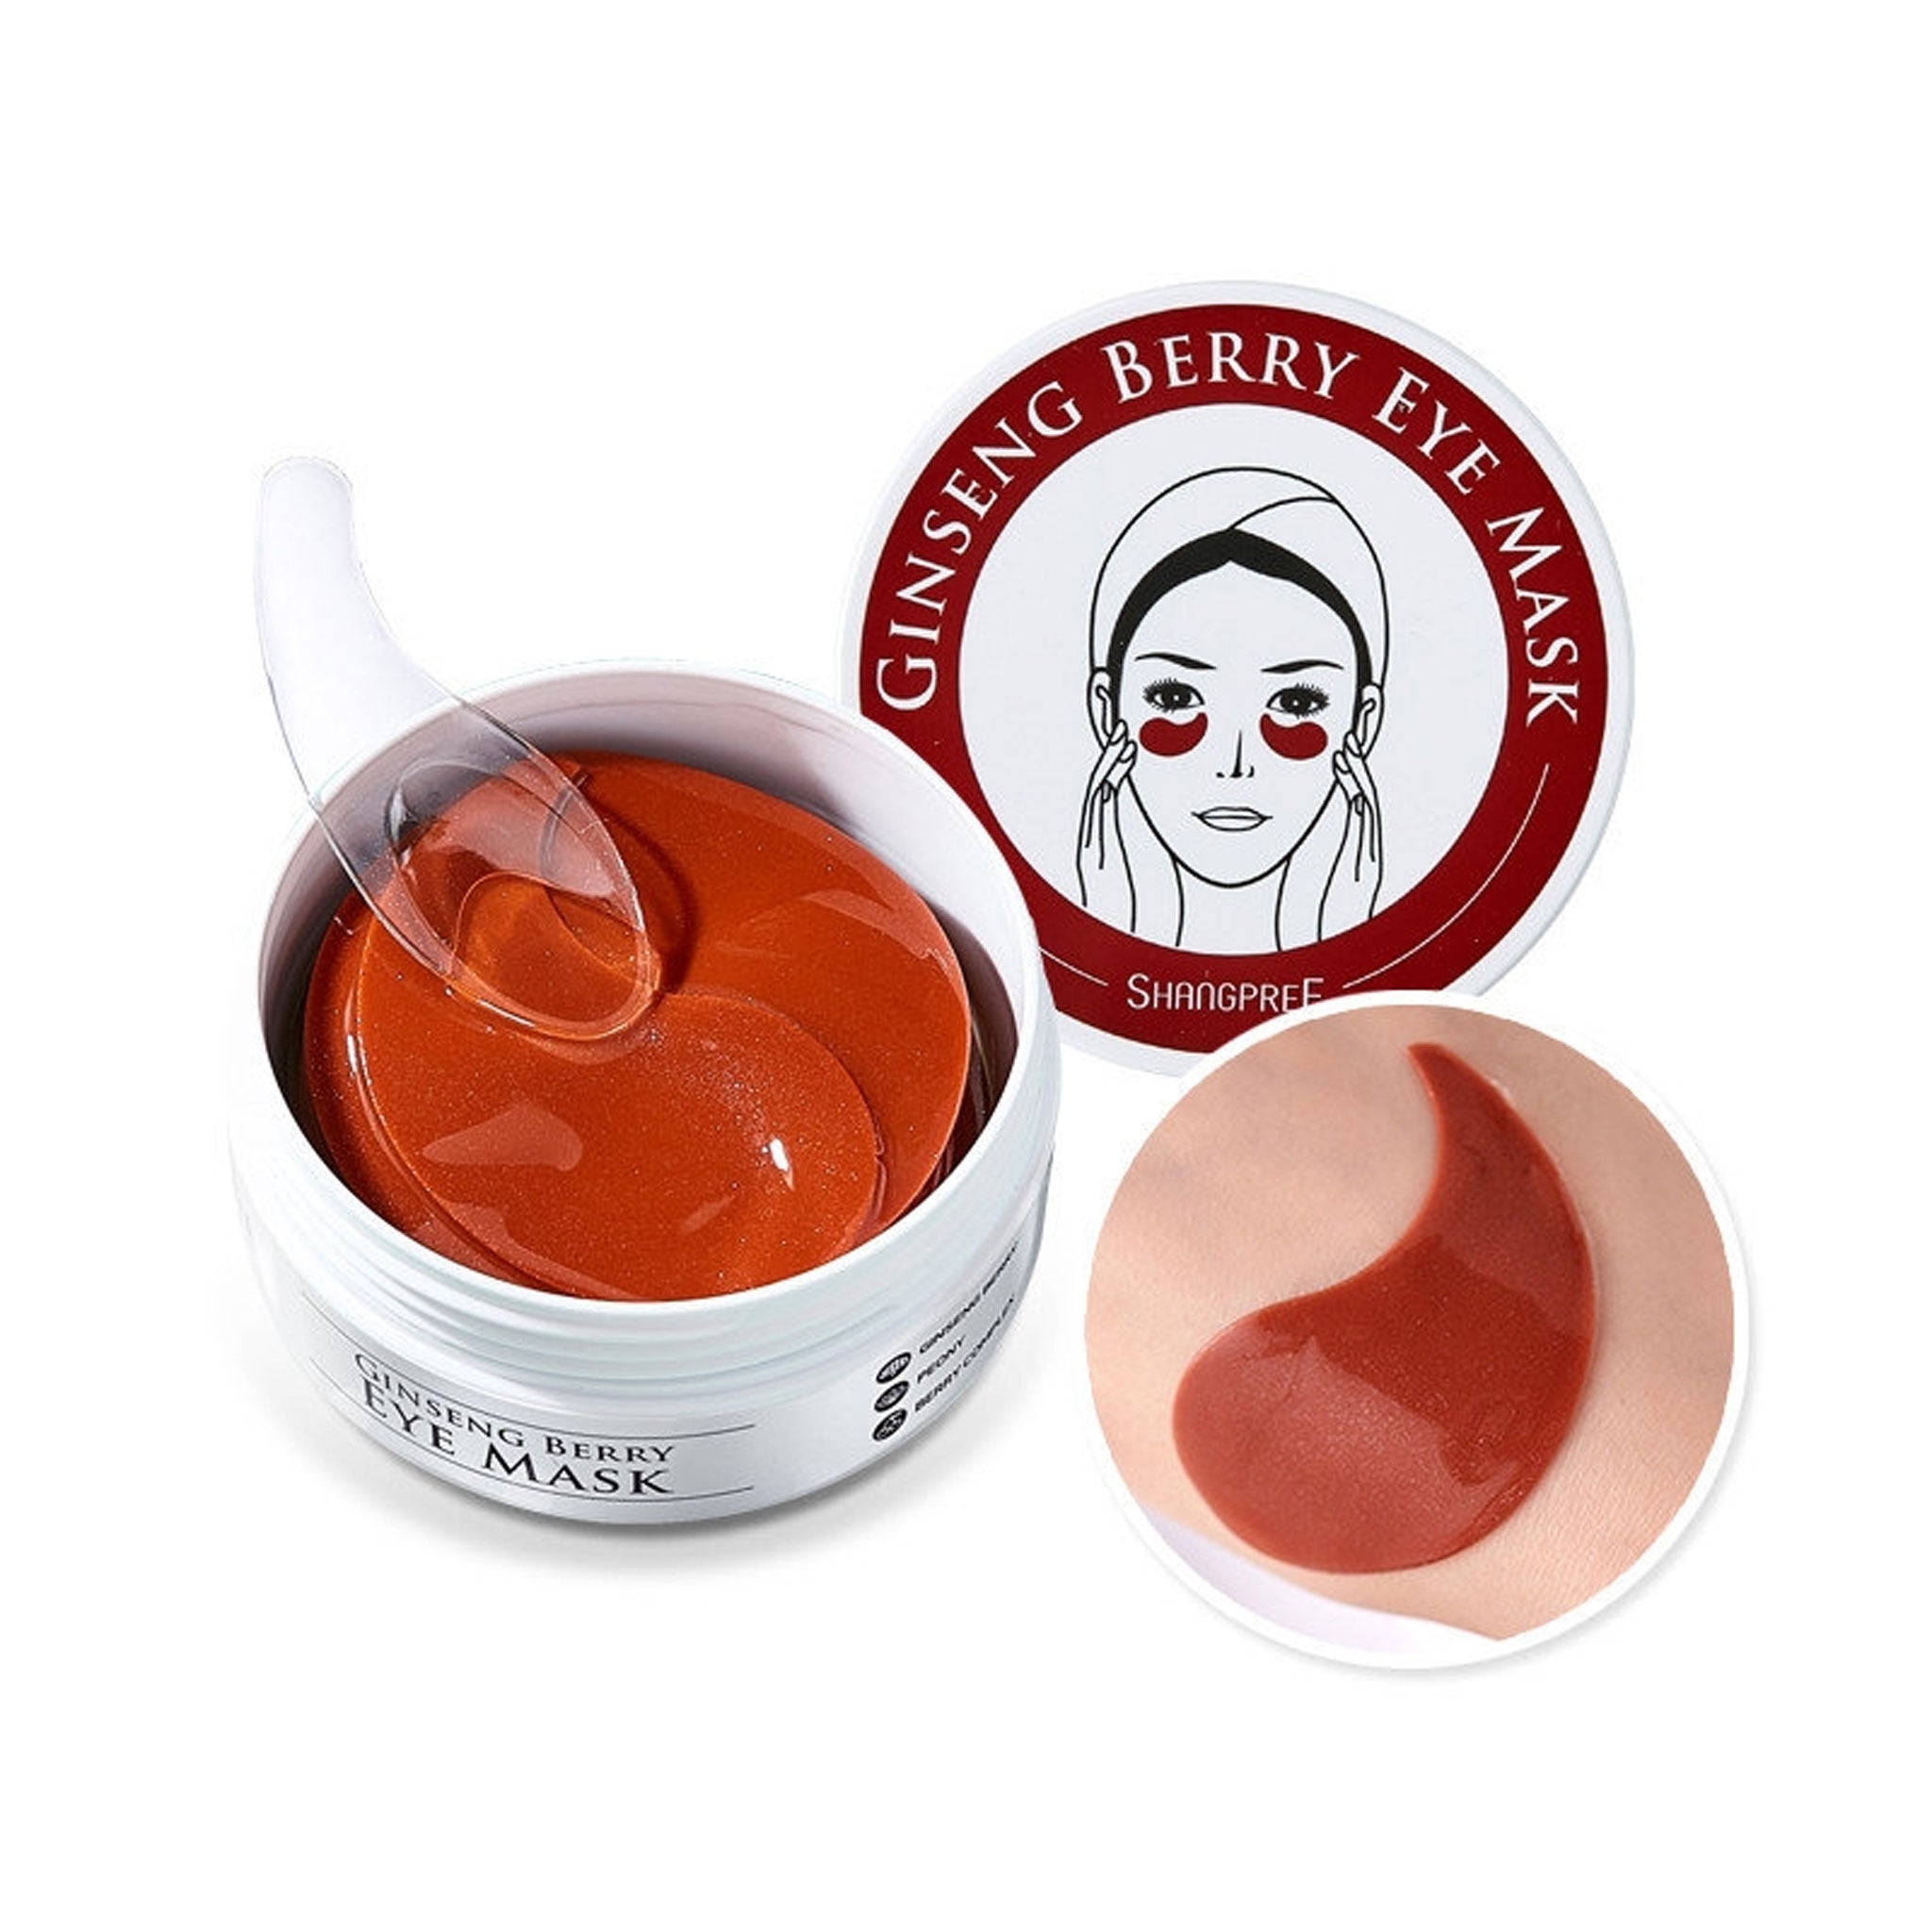 SHANGPREE Ginseng Berry Eye Mask 1box